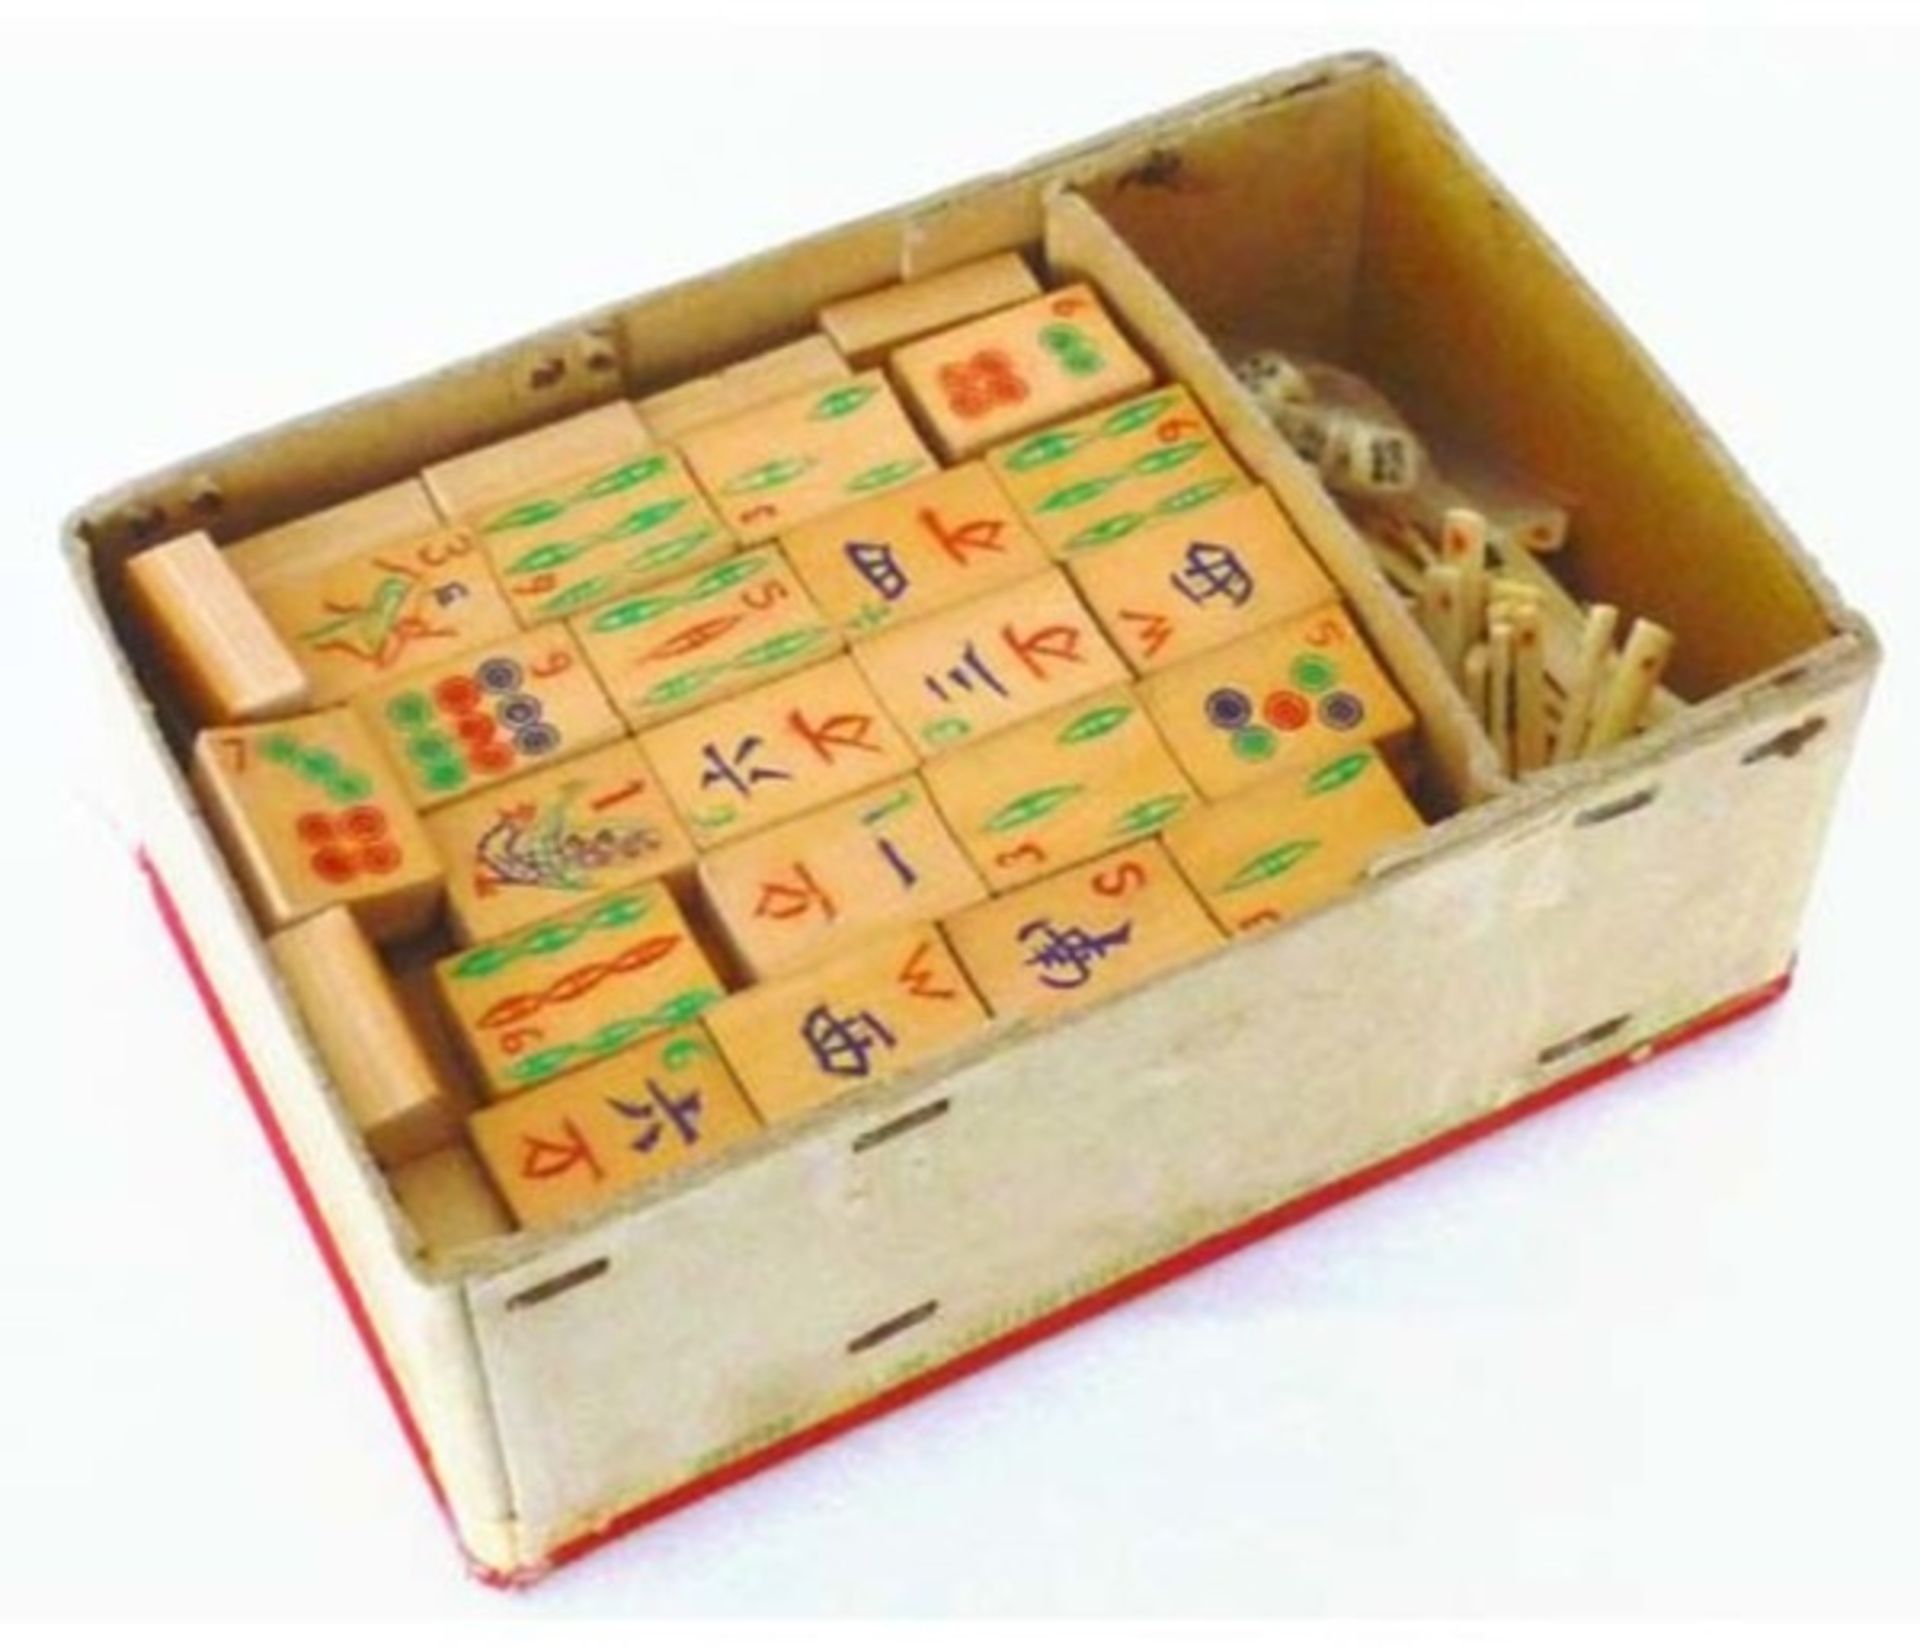 (Mahjong) Mahjong bamboe, veelkleurige Chinese doos, ca. 1924 - Bild 2 aus 7